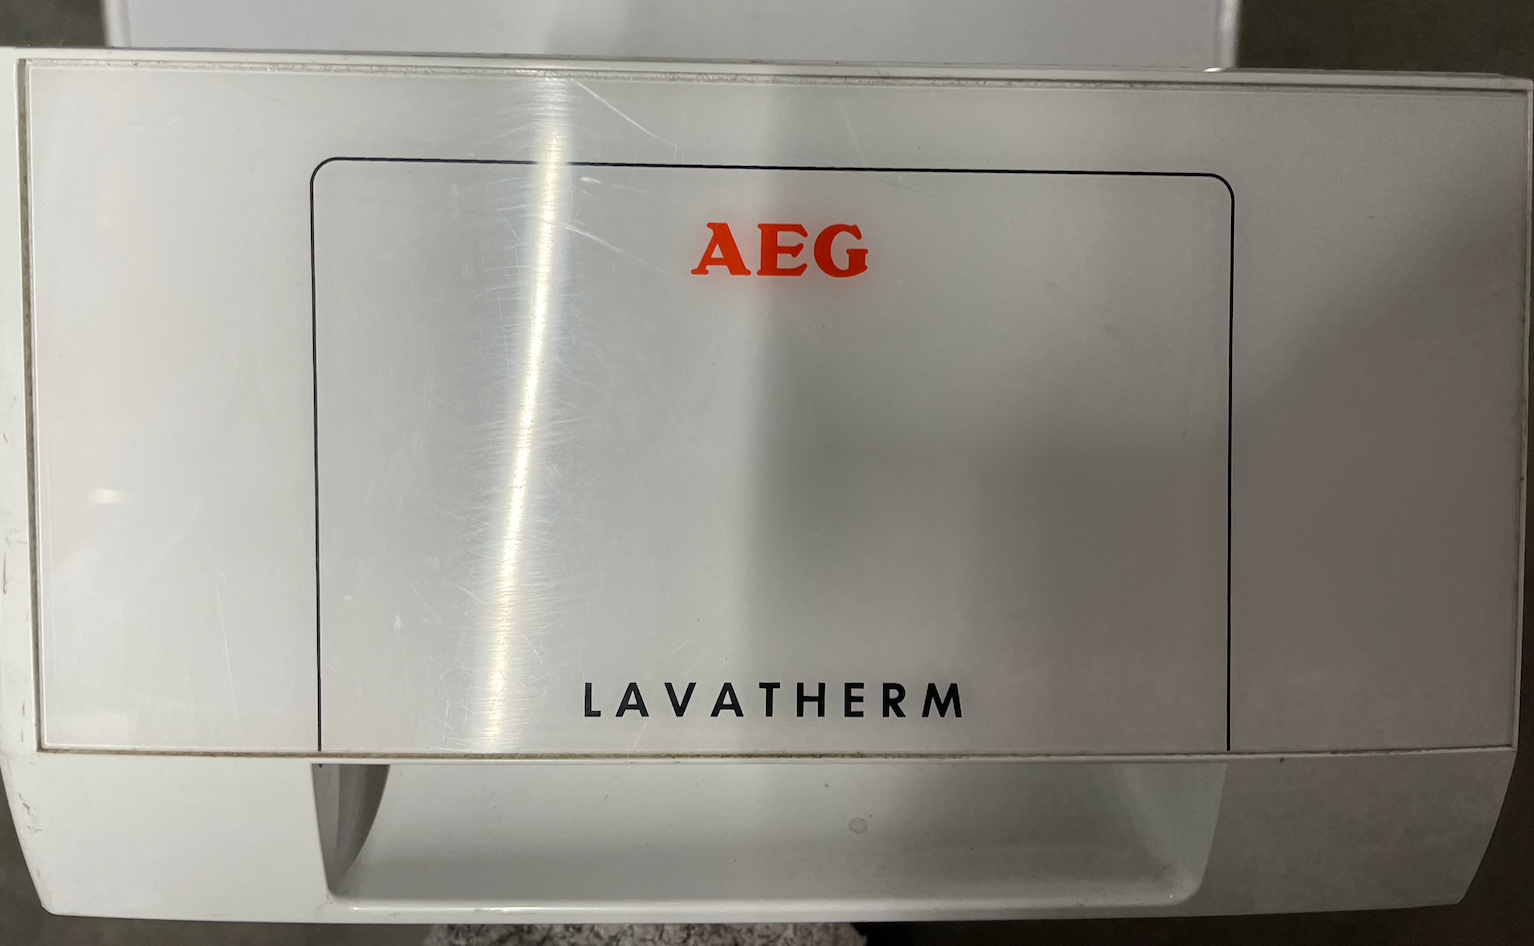 Vanntank/kondensbeholder til AEG Electrolux Lavatherm tørketrommel